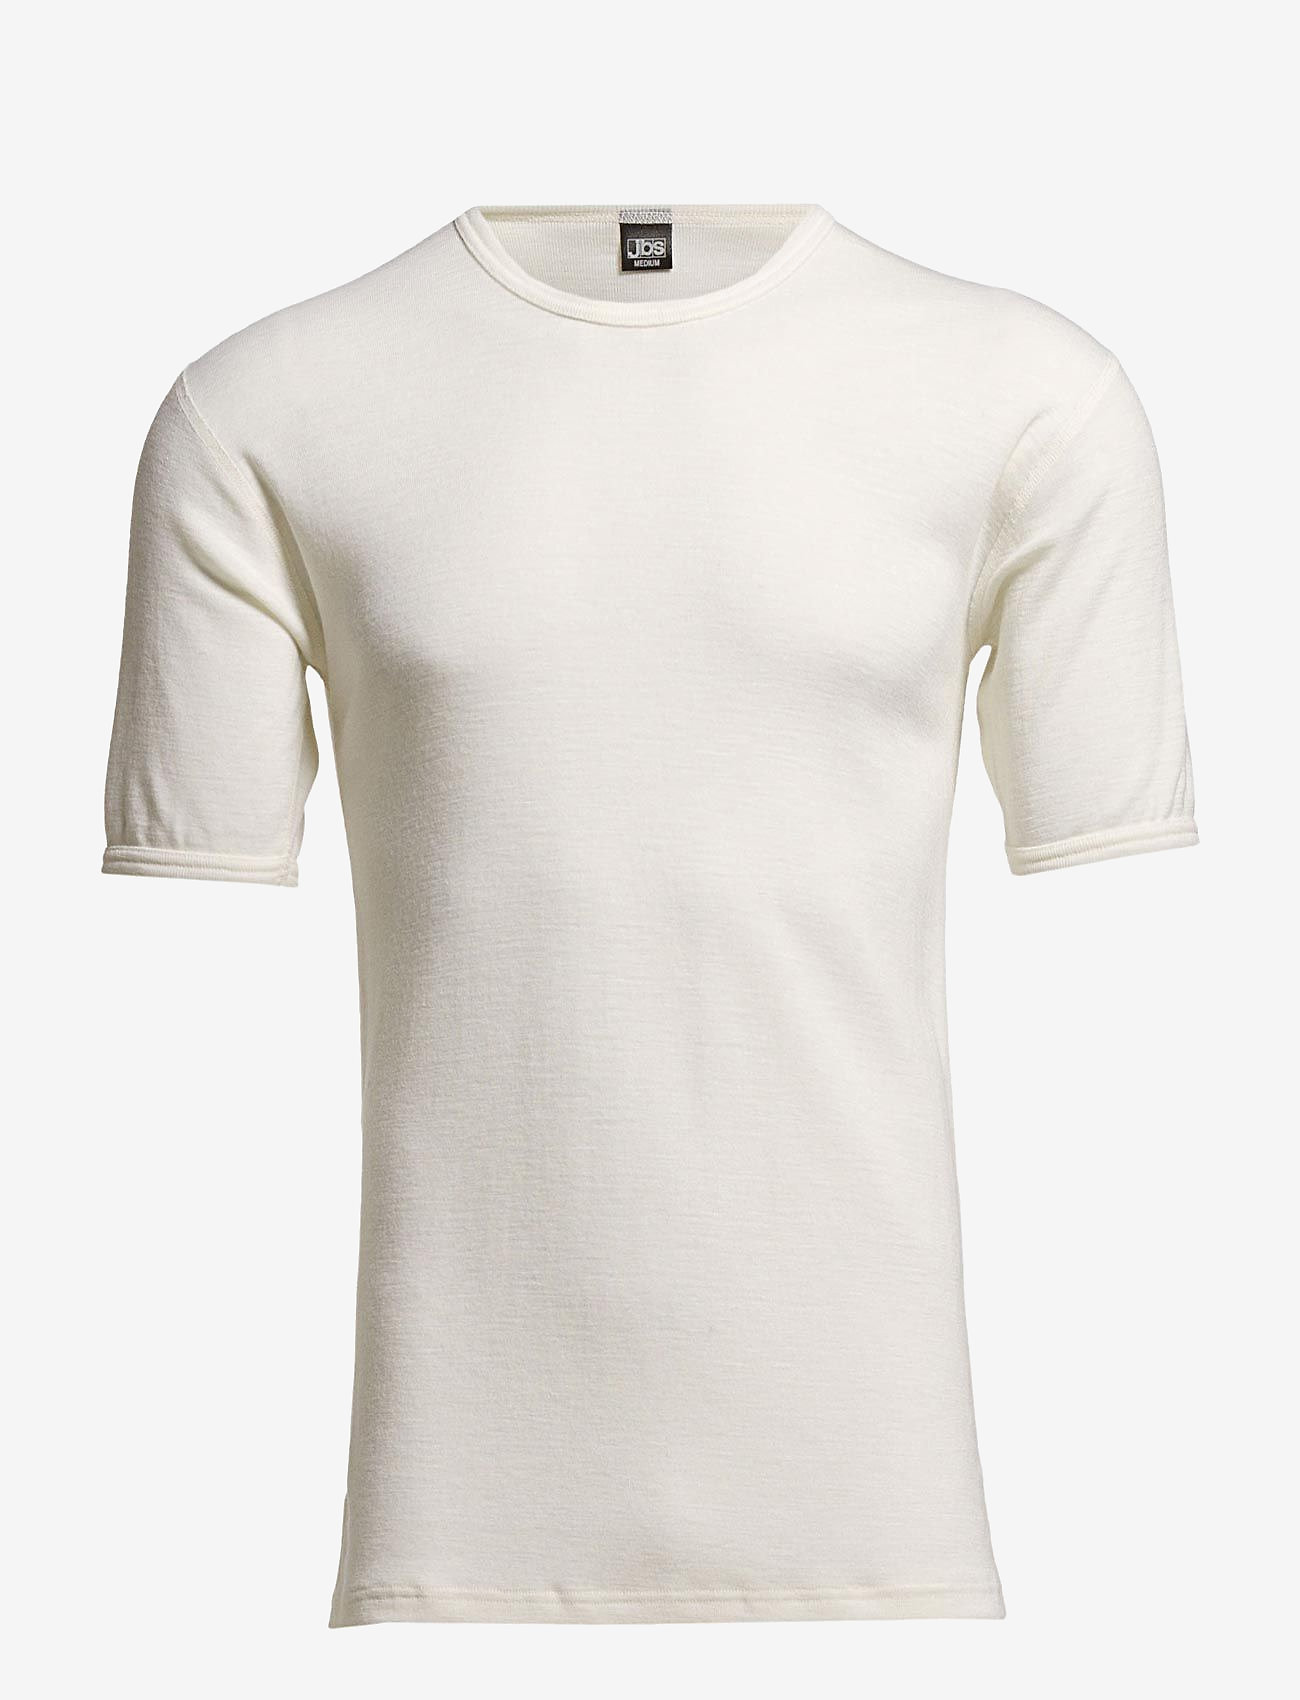 JBS - JBS, t-shirt - short-sleeved t-shirts - white - 0